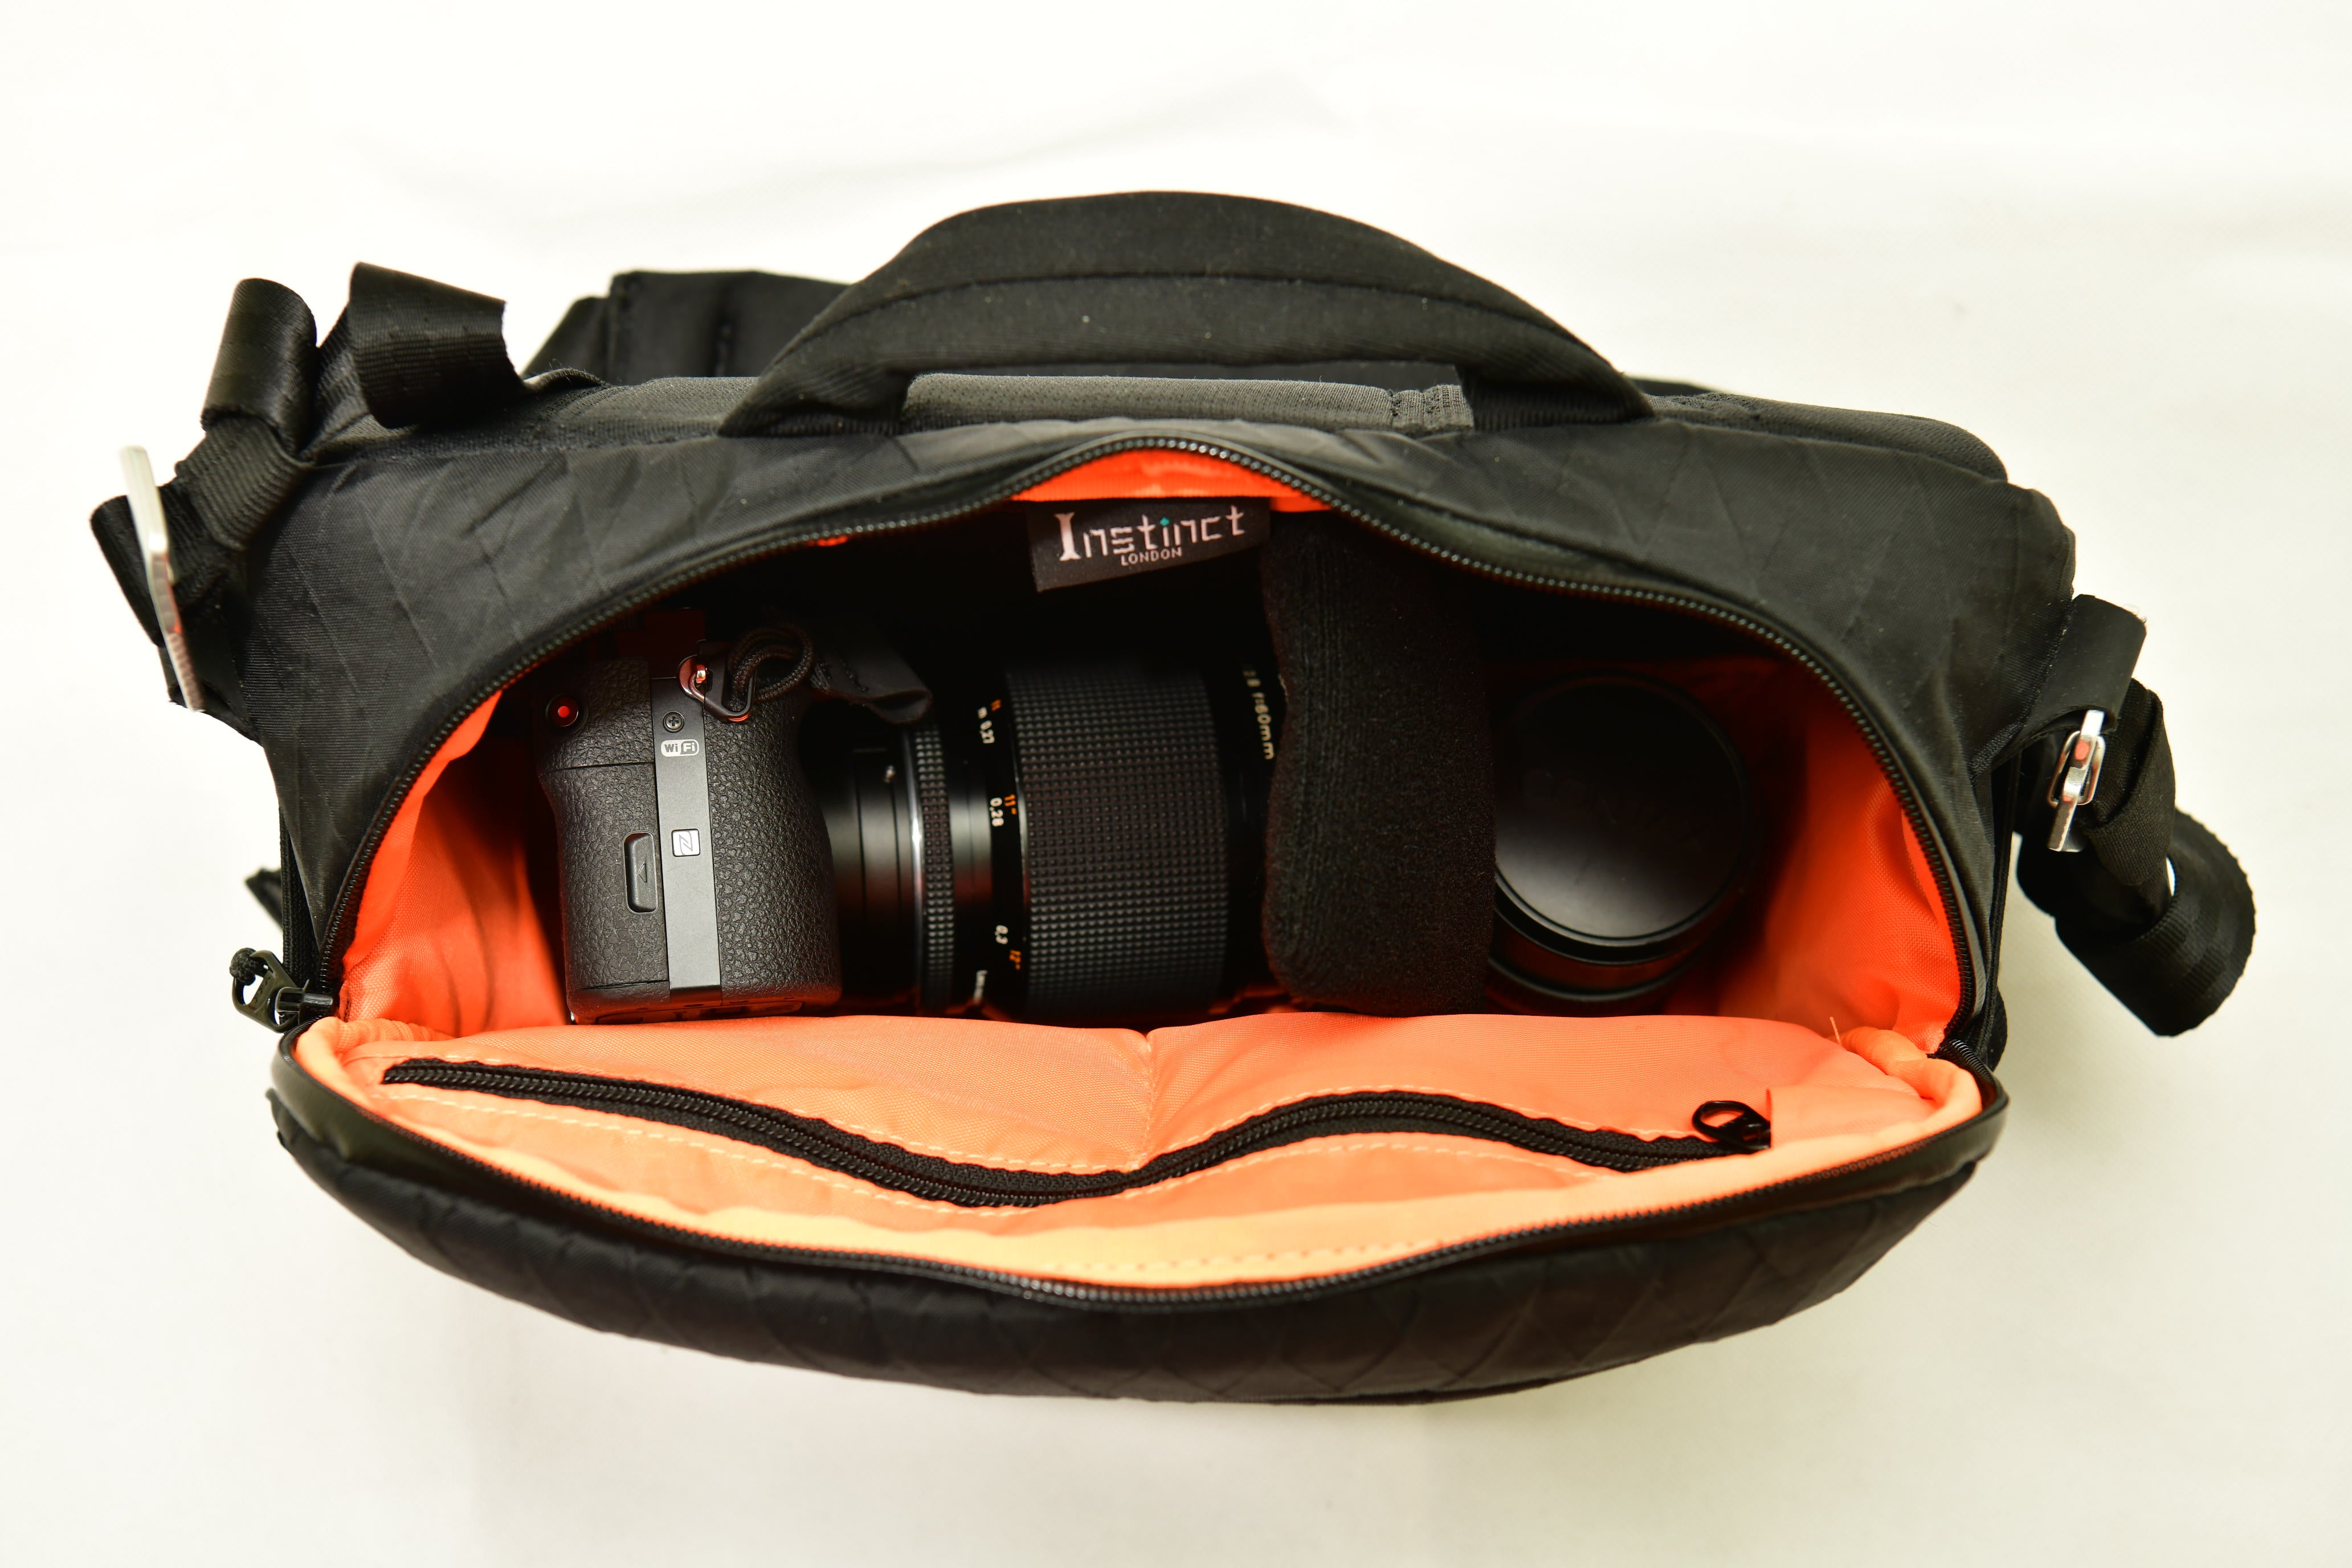 Straps - Bag & Camera